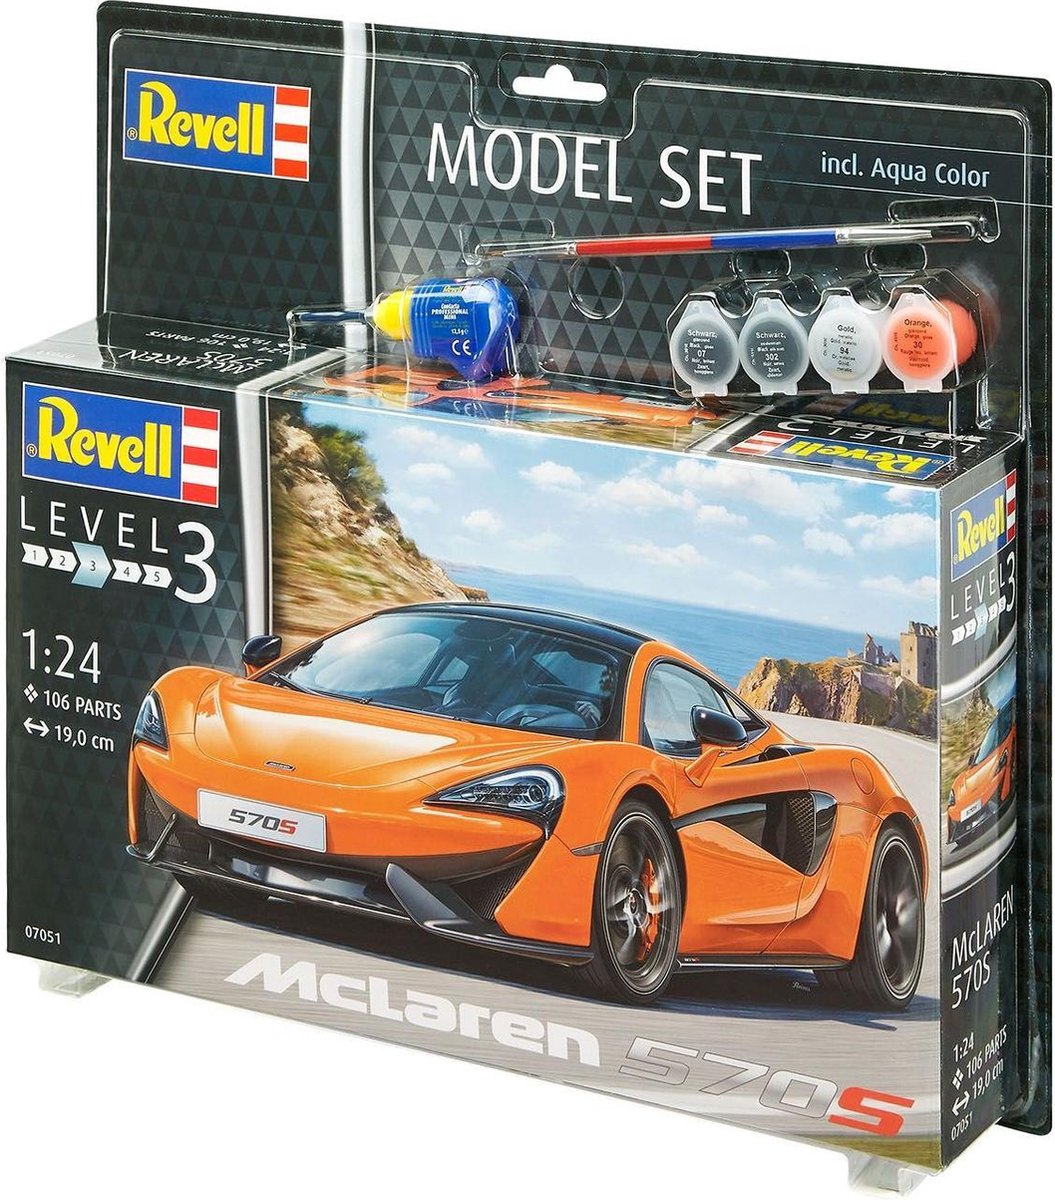 Maquette Revell Model Set Mclaren 570S ( 67051 ) - Vosges Modélisme